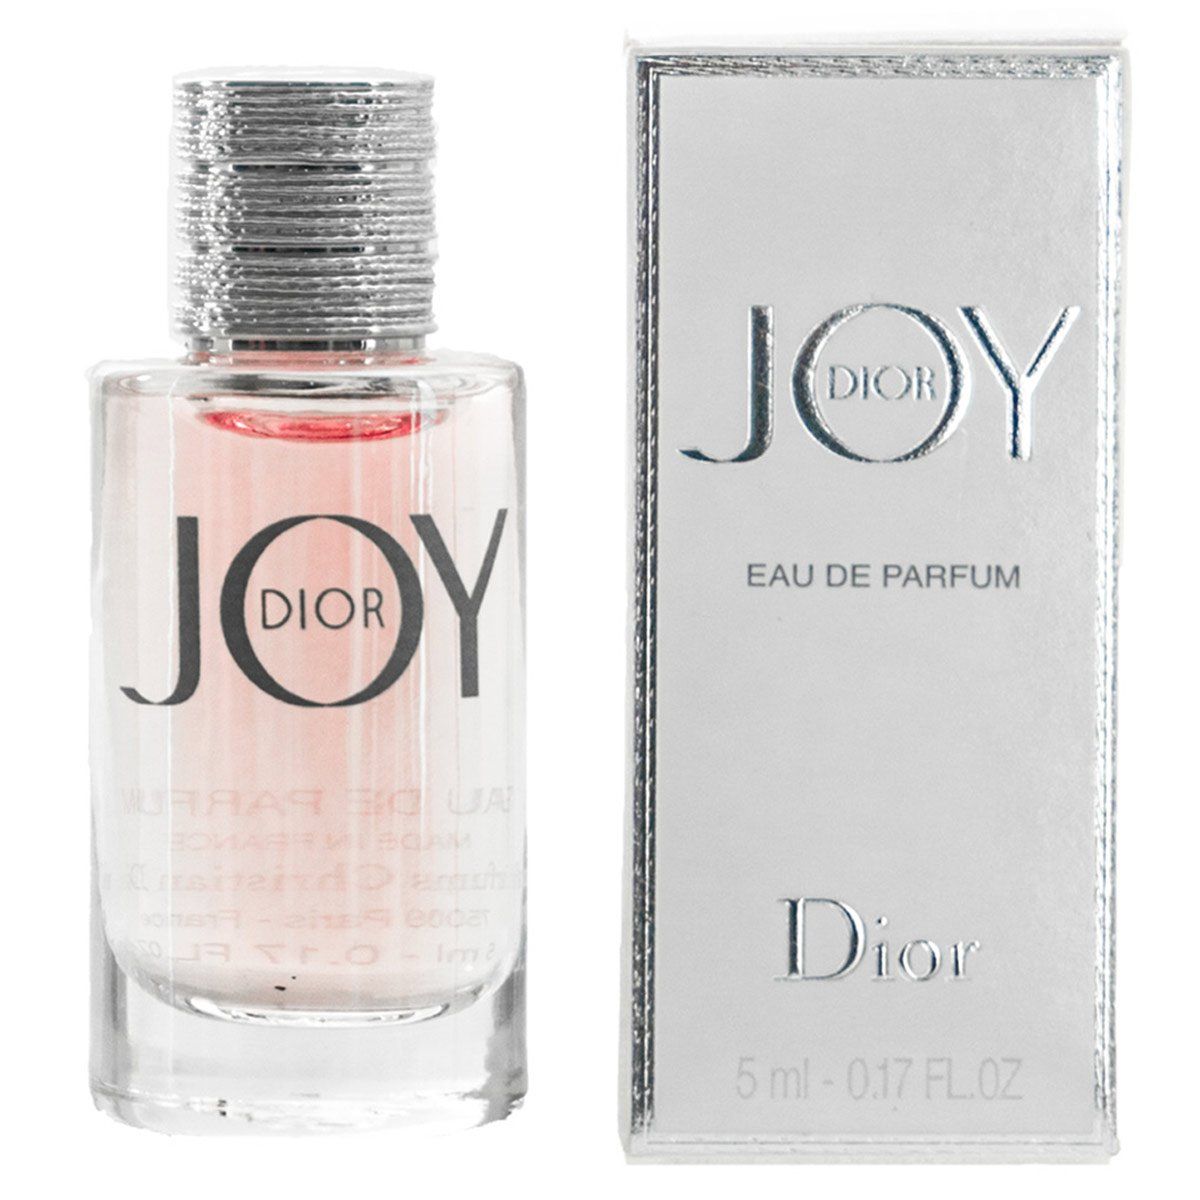 Dior Joy Chính Hãng Pháp  Bảo Hành Vĩnh Viễn tại Missi Perfume